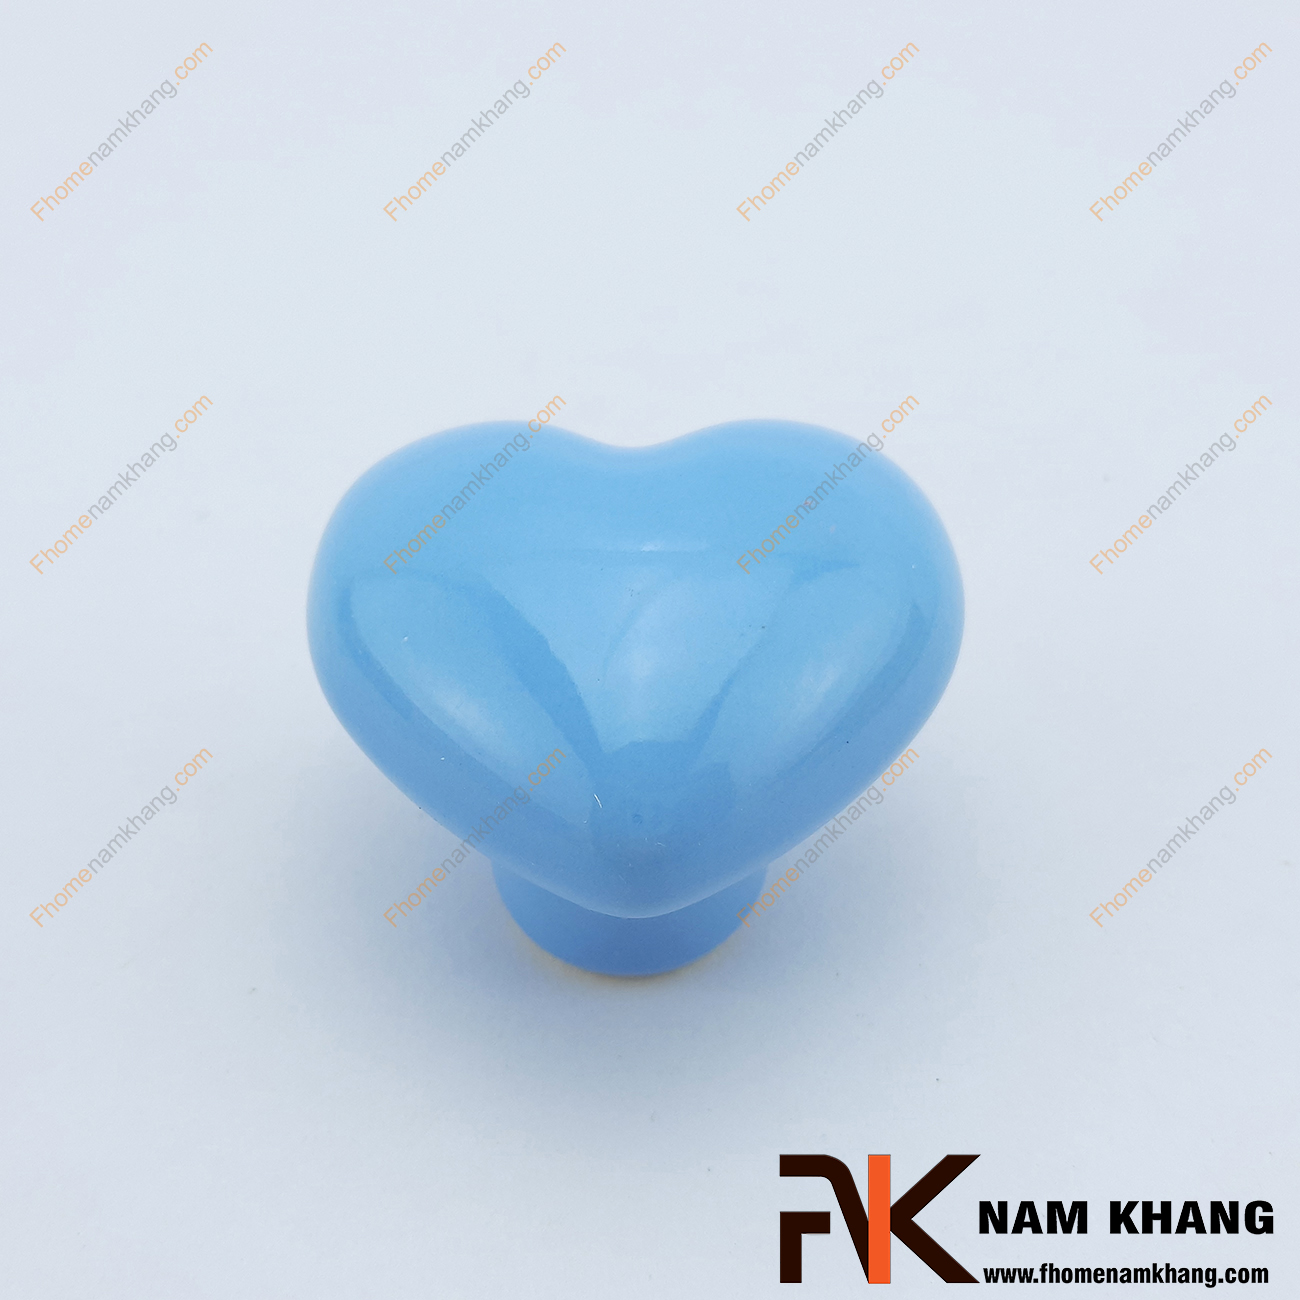 Núm cửa tủ bằng sứ hình trái tim NK394 là một dạng núm cửa tủ thuần sứ được sản xuất từ chất liệu sứ cao cấp có độ bền cao.